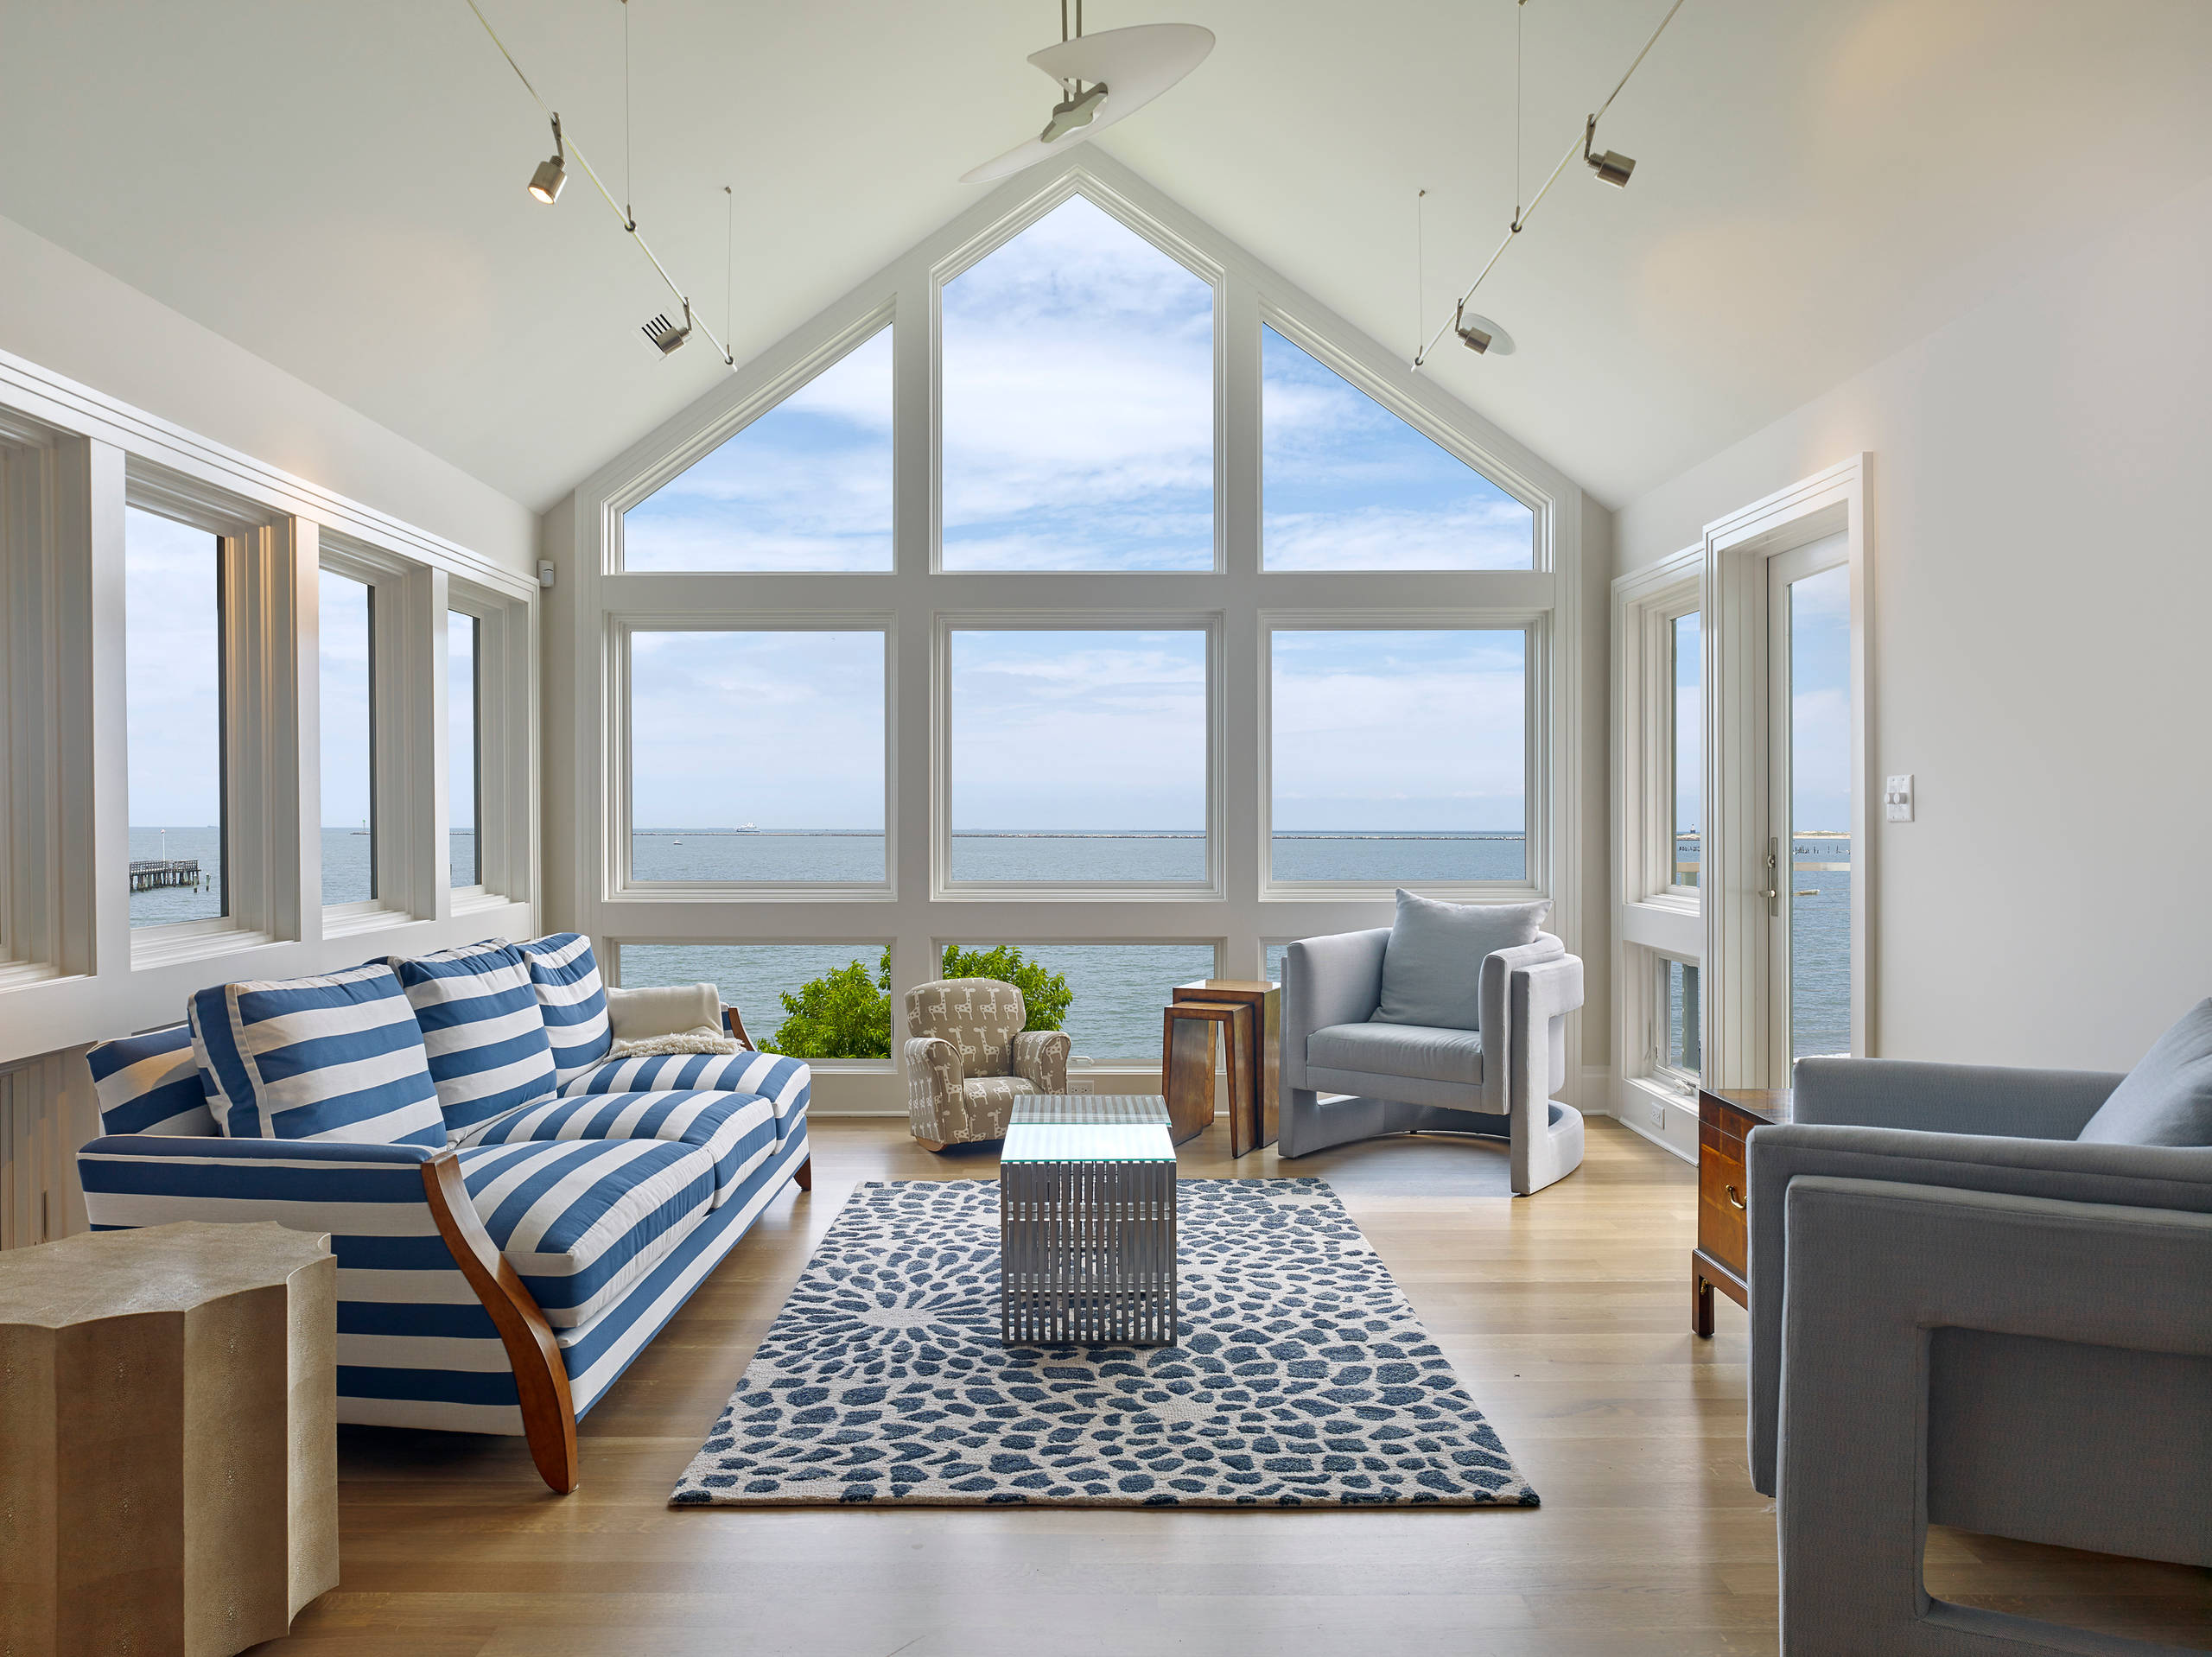 Dem Meer ganz nah! 10 Tipps für Wohnzimmer im maritimen Stil